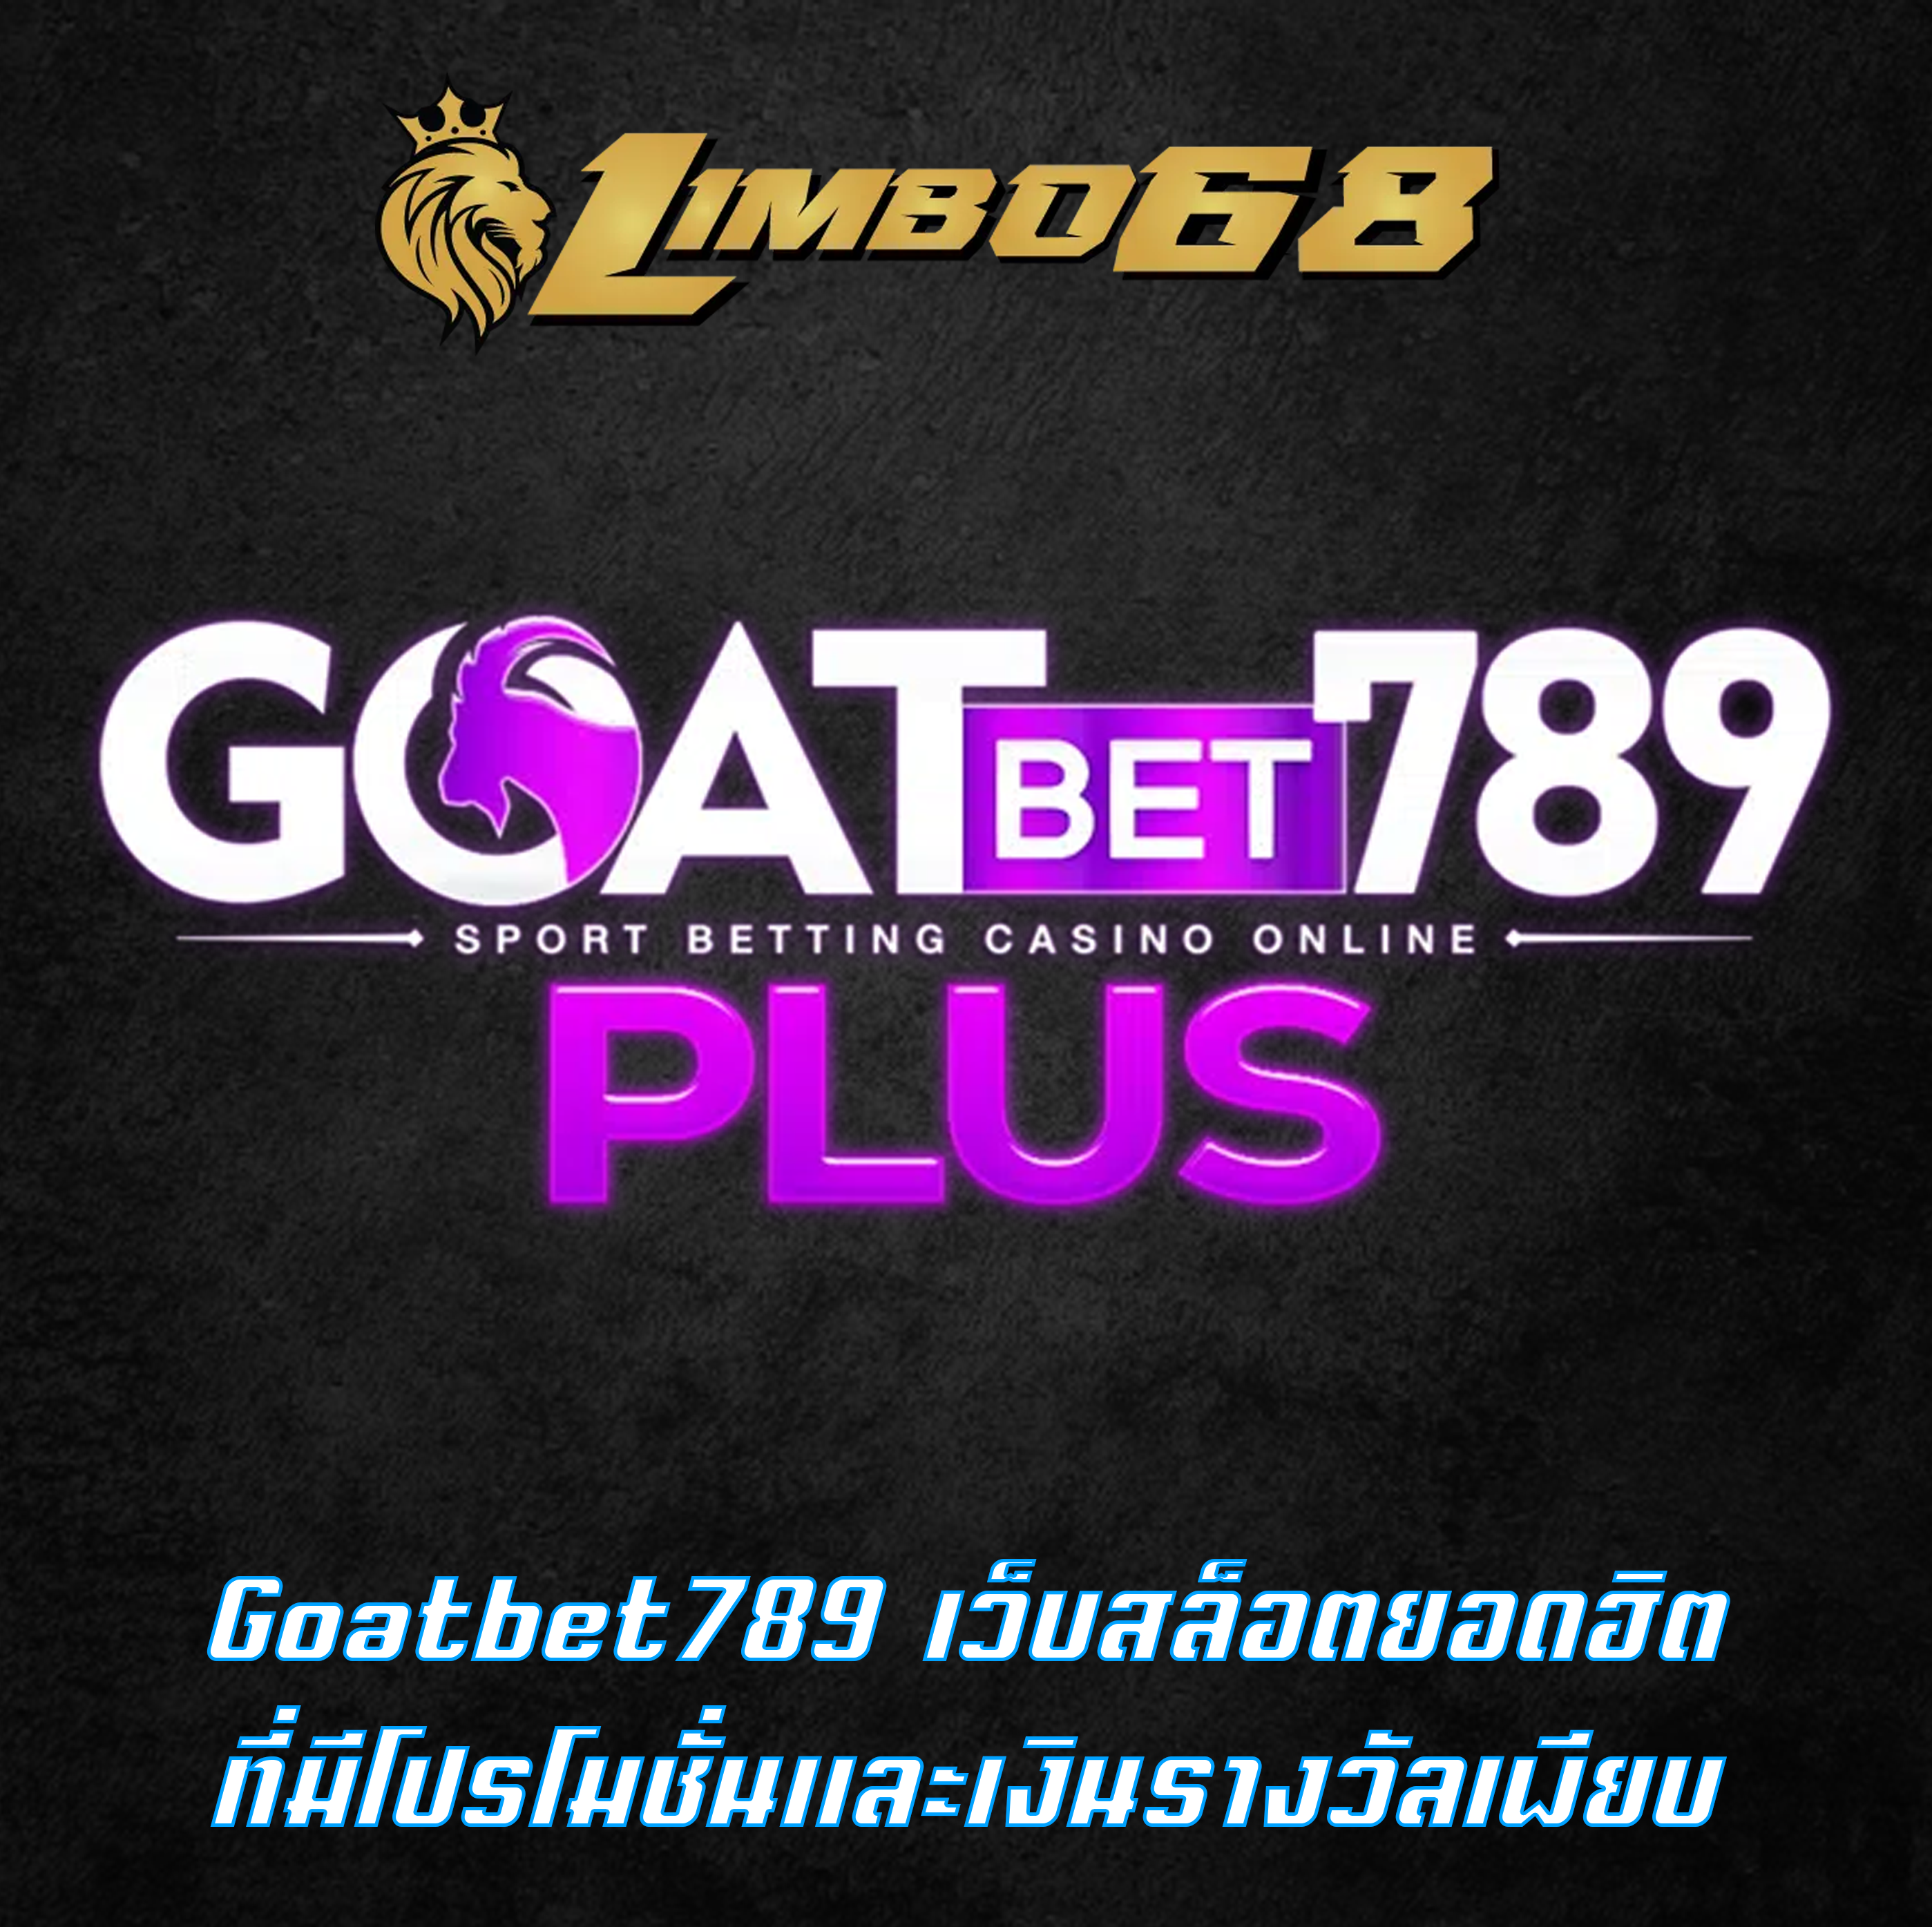 Goatbet789 เว็บสล็อตยอดฮิต ที่มีโปรโมชั่นและเงินรางวัลเพียบ